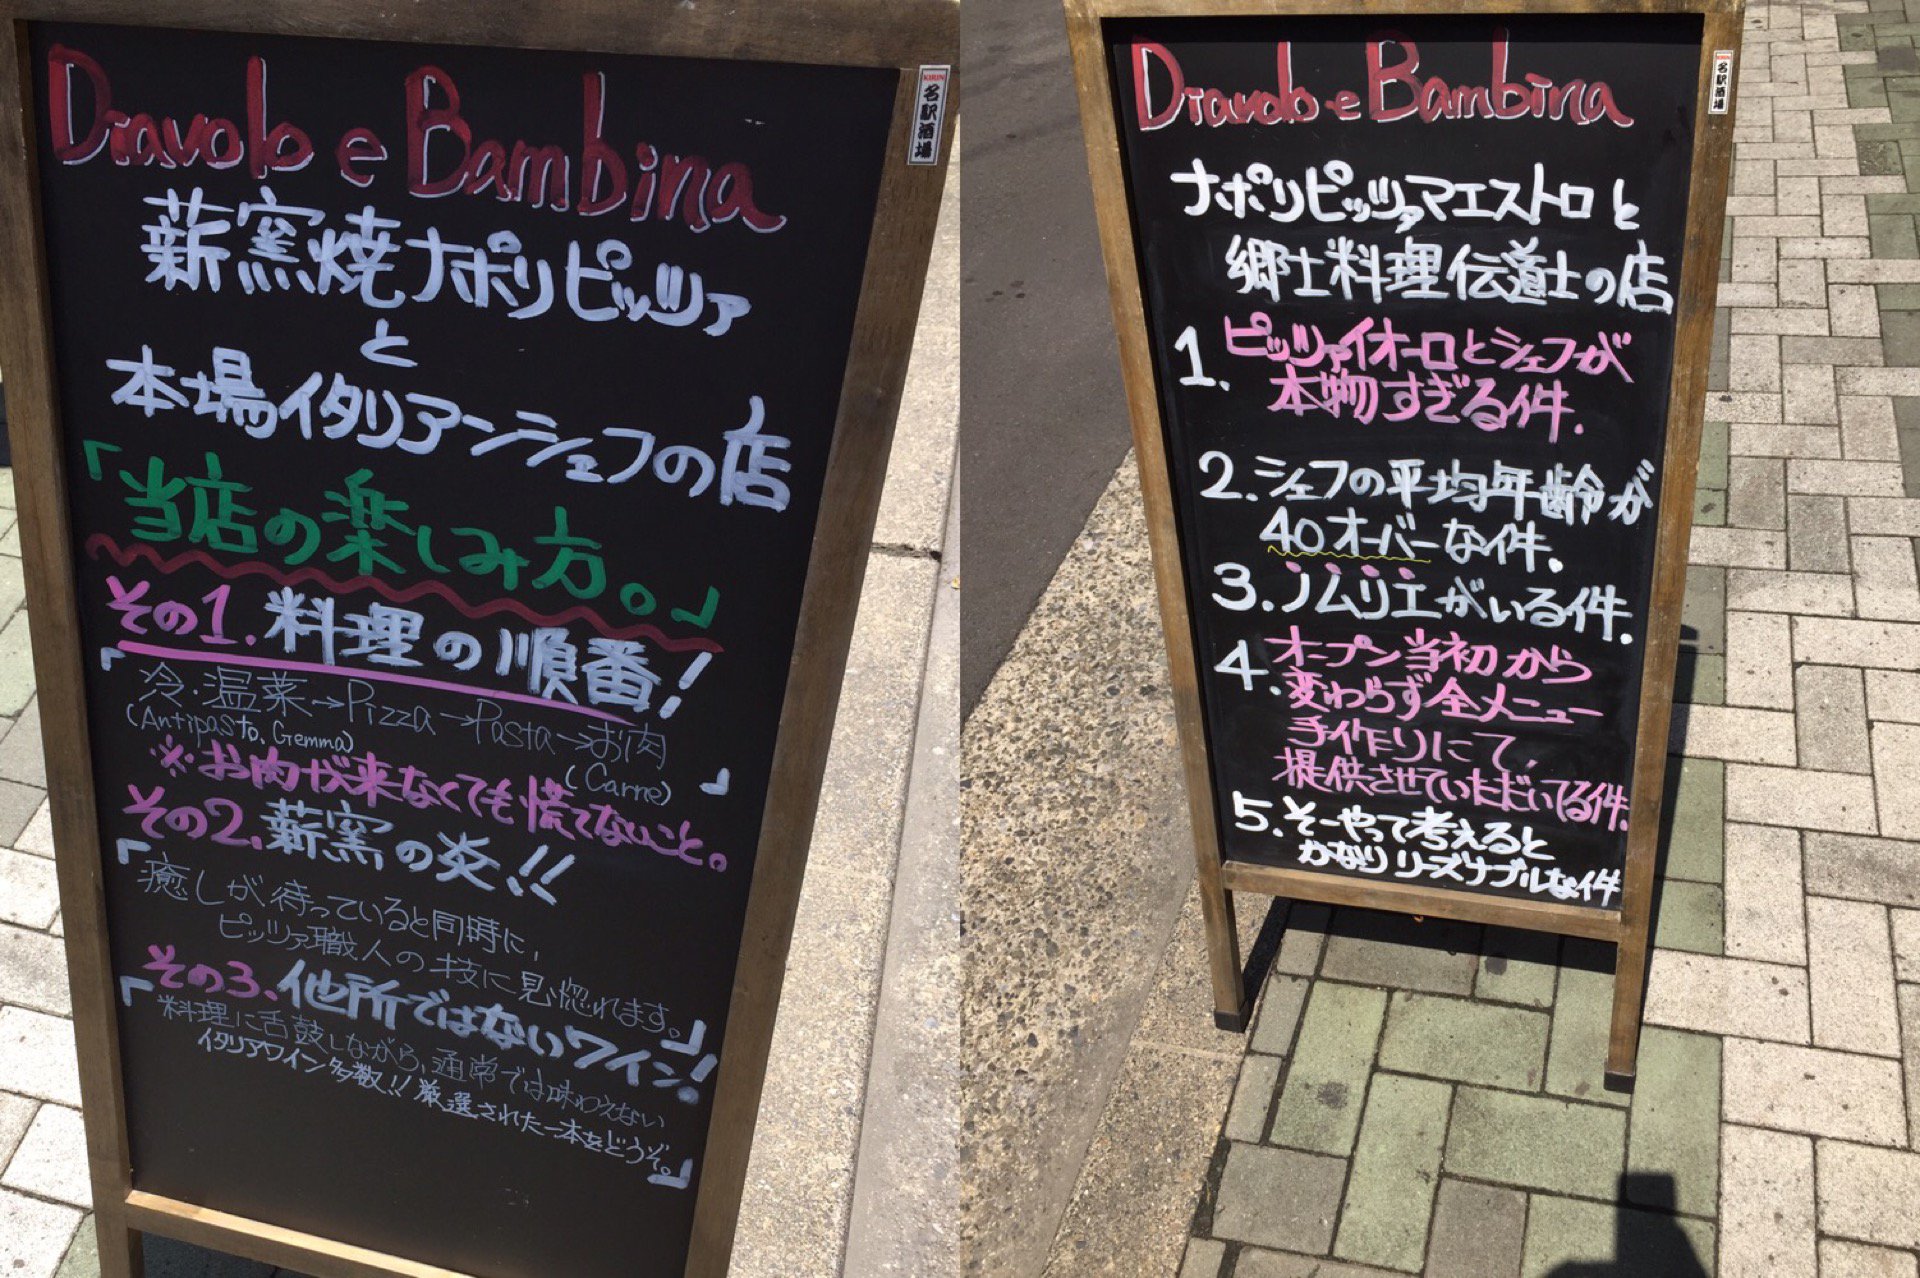 ディアボロ・バンビーナの看板。 (@ Diavolo e Bambina in Nagoya, Aichi-ken) https://t.co/UhQIWf5DAs https://t.co/0LnmCAguou